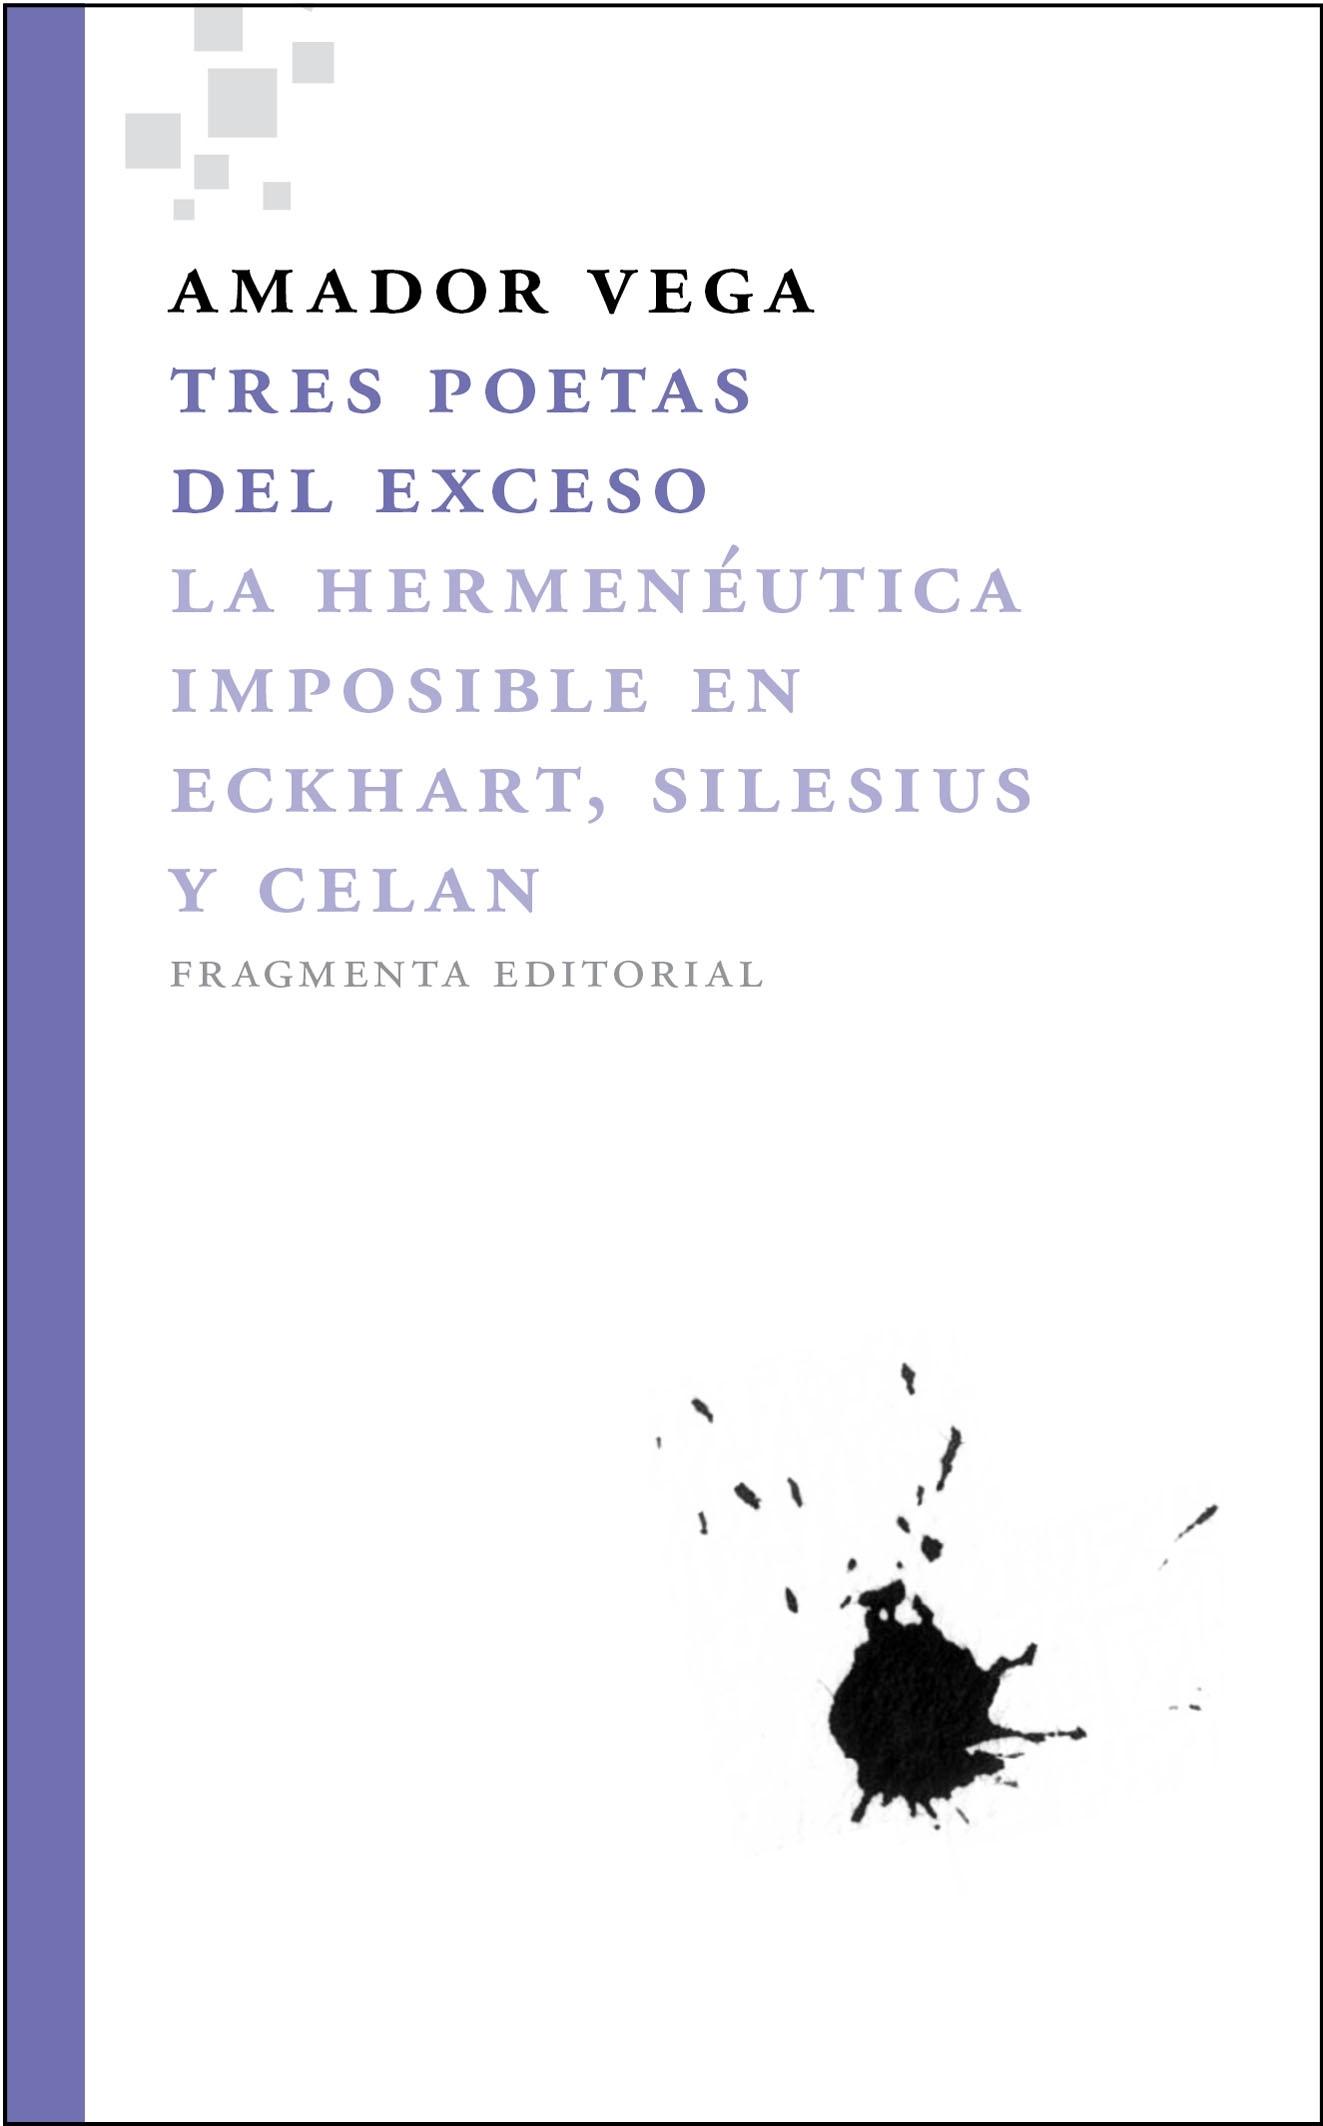 Tres Poetas del Exceso "La Hermenéutica Imposible en Eckhart, Silesius y Celan"